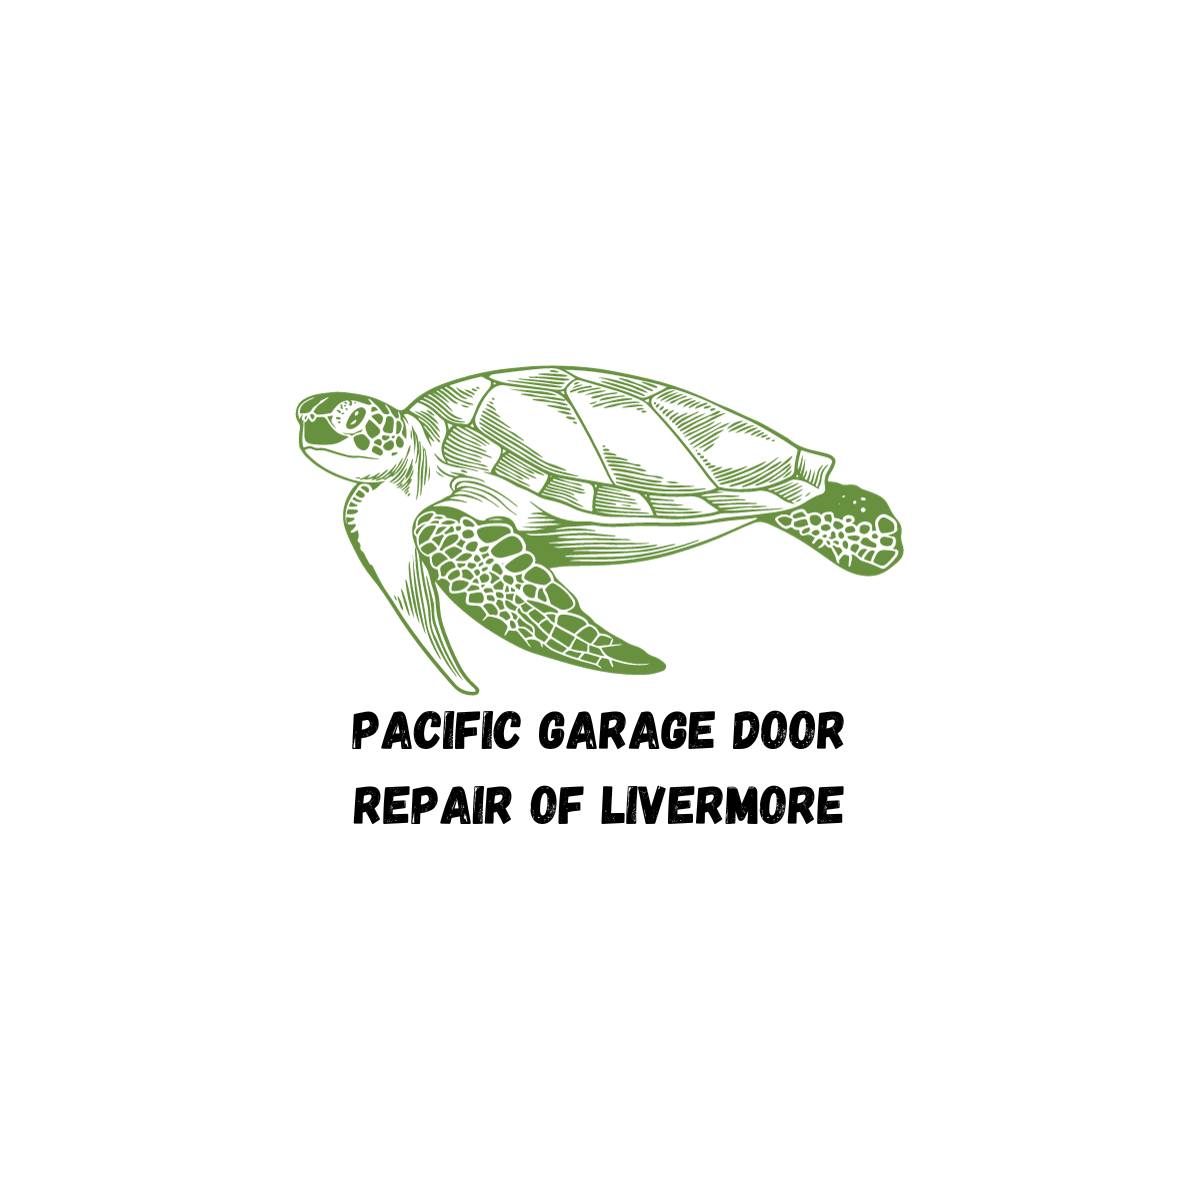 Pacific Garage Door Repair of Livermore